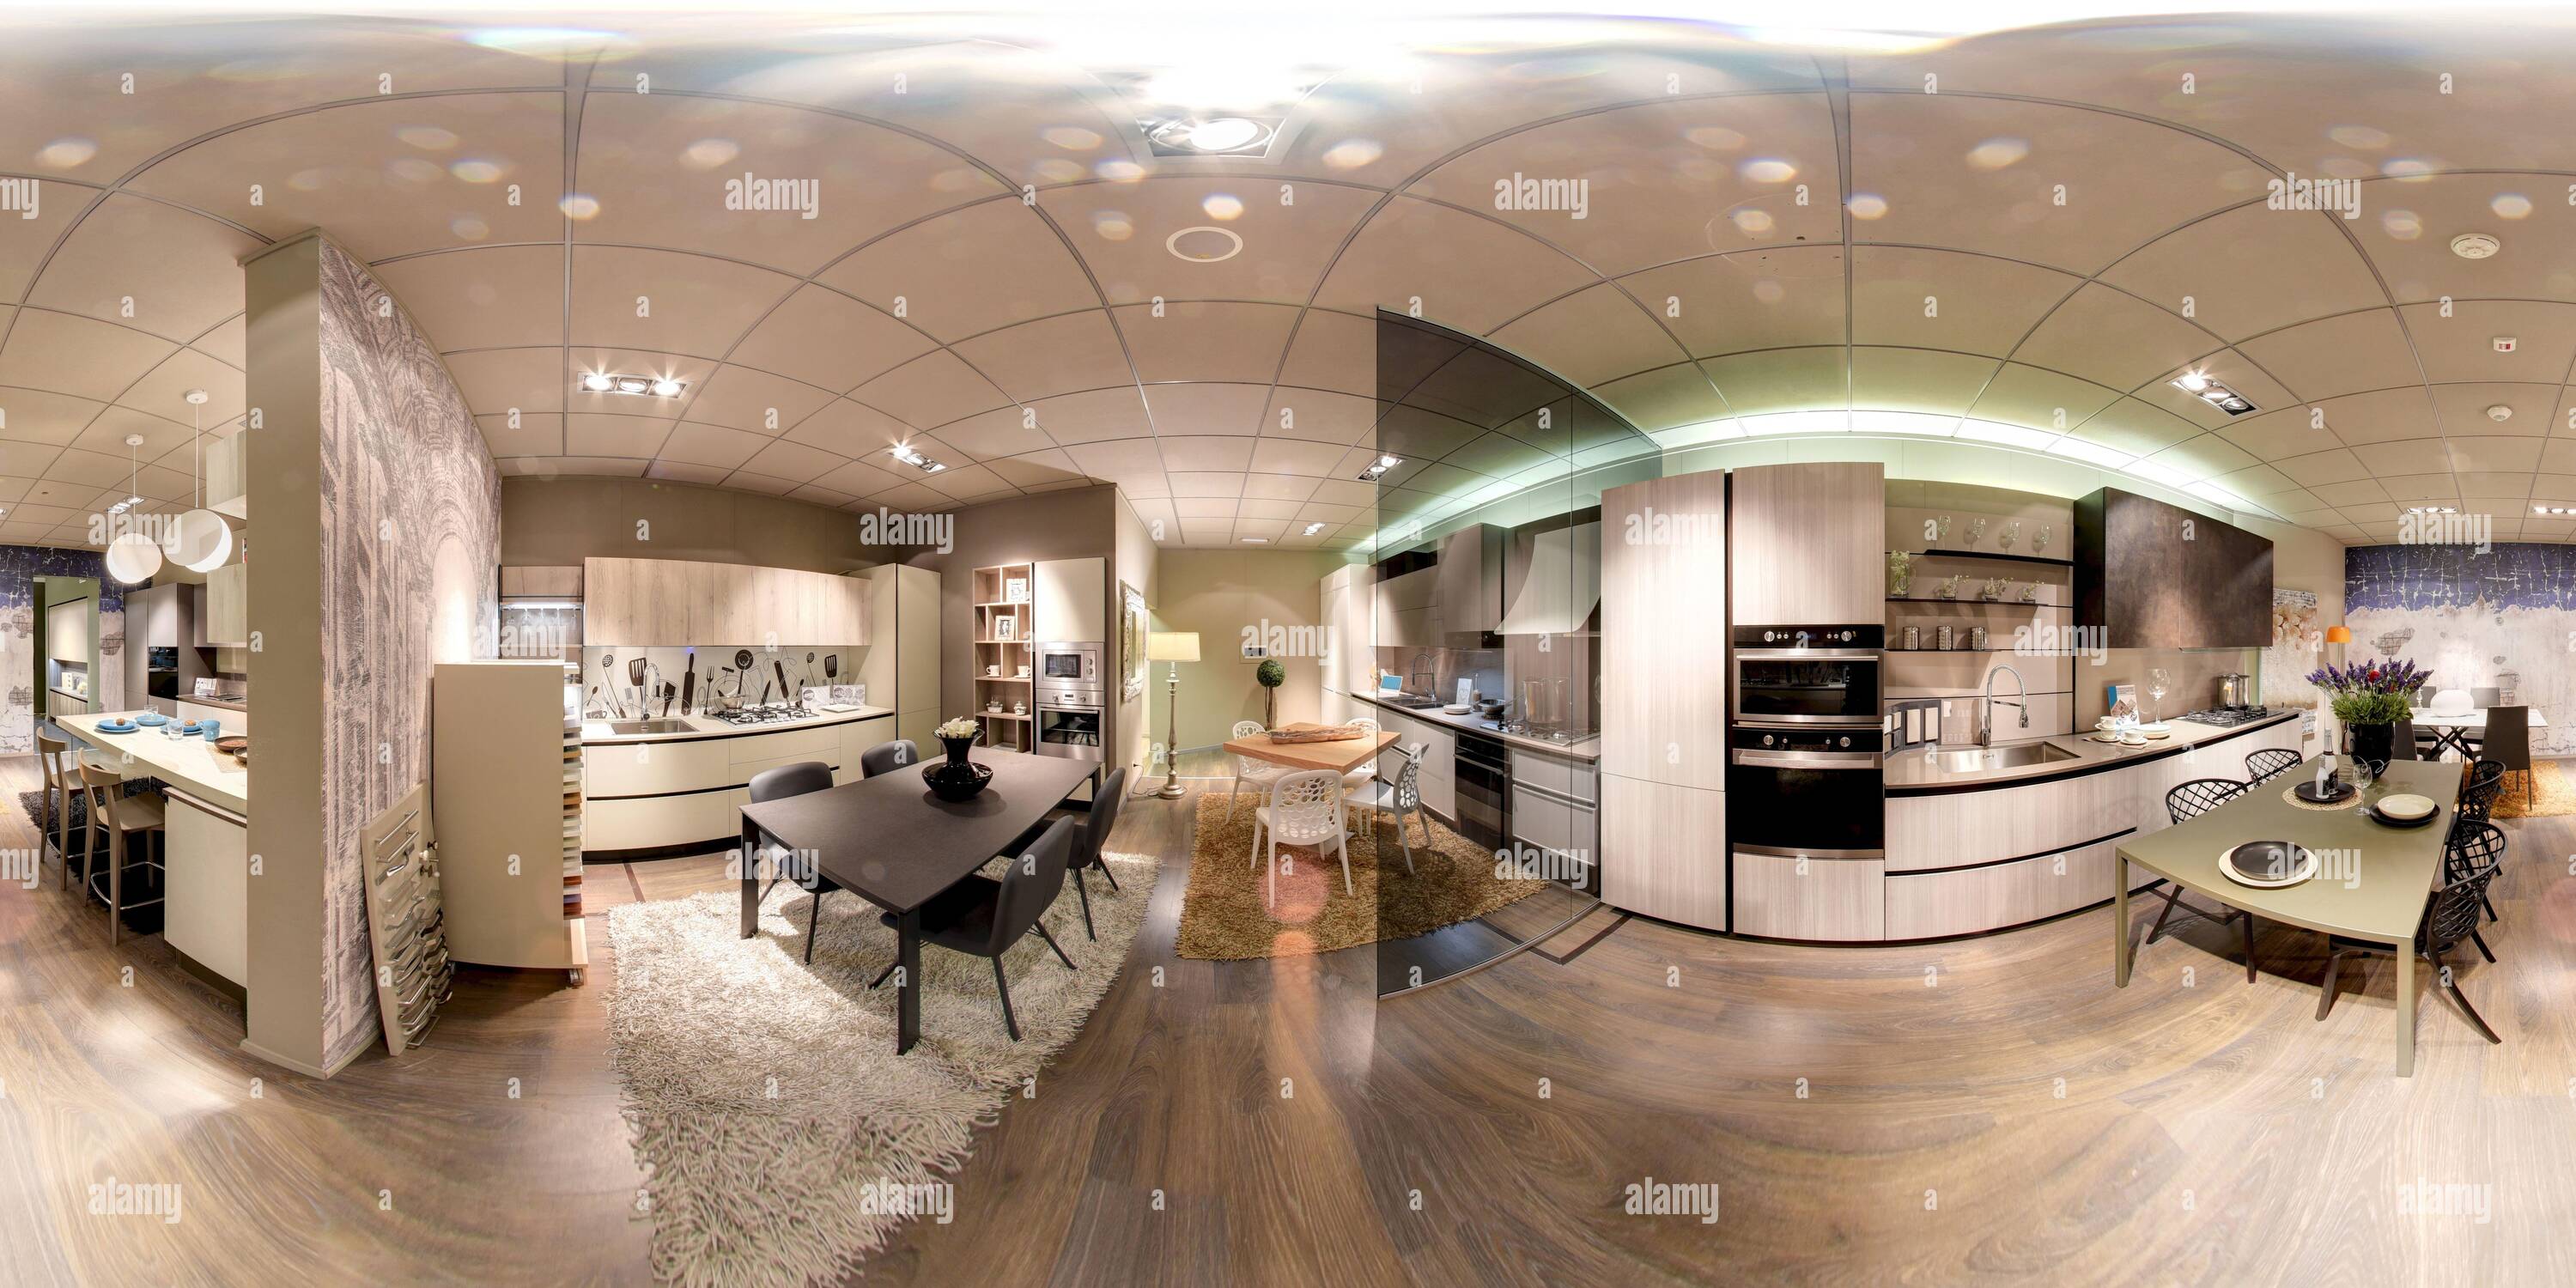 Visualizzazione panoramica a 360 gradi di panorama a 360 gradi di uno showroom di arredamento interno che mostra un una gamma di cucine diverse con aree da pranzo di colore neutro arredamento